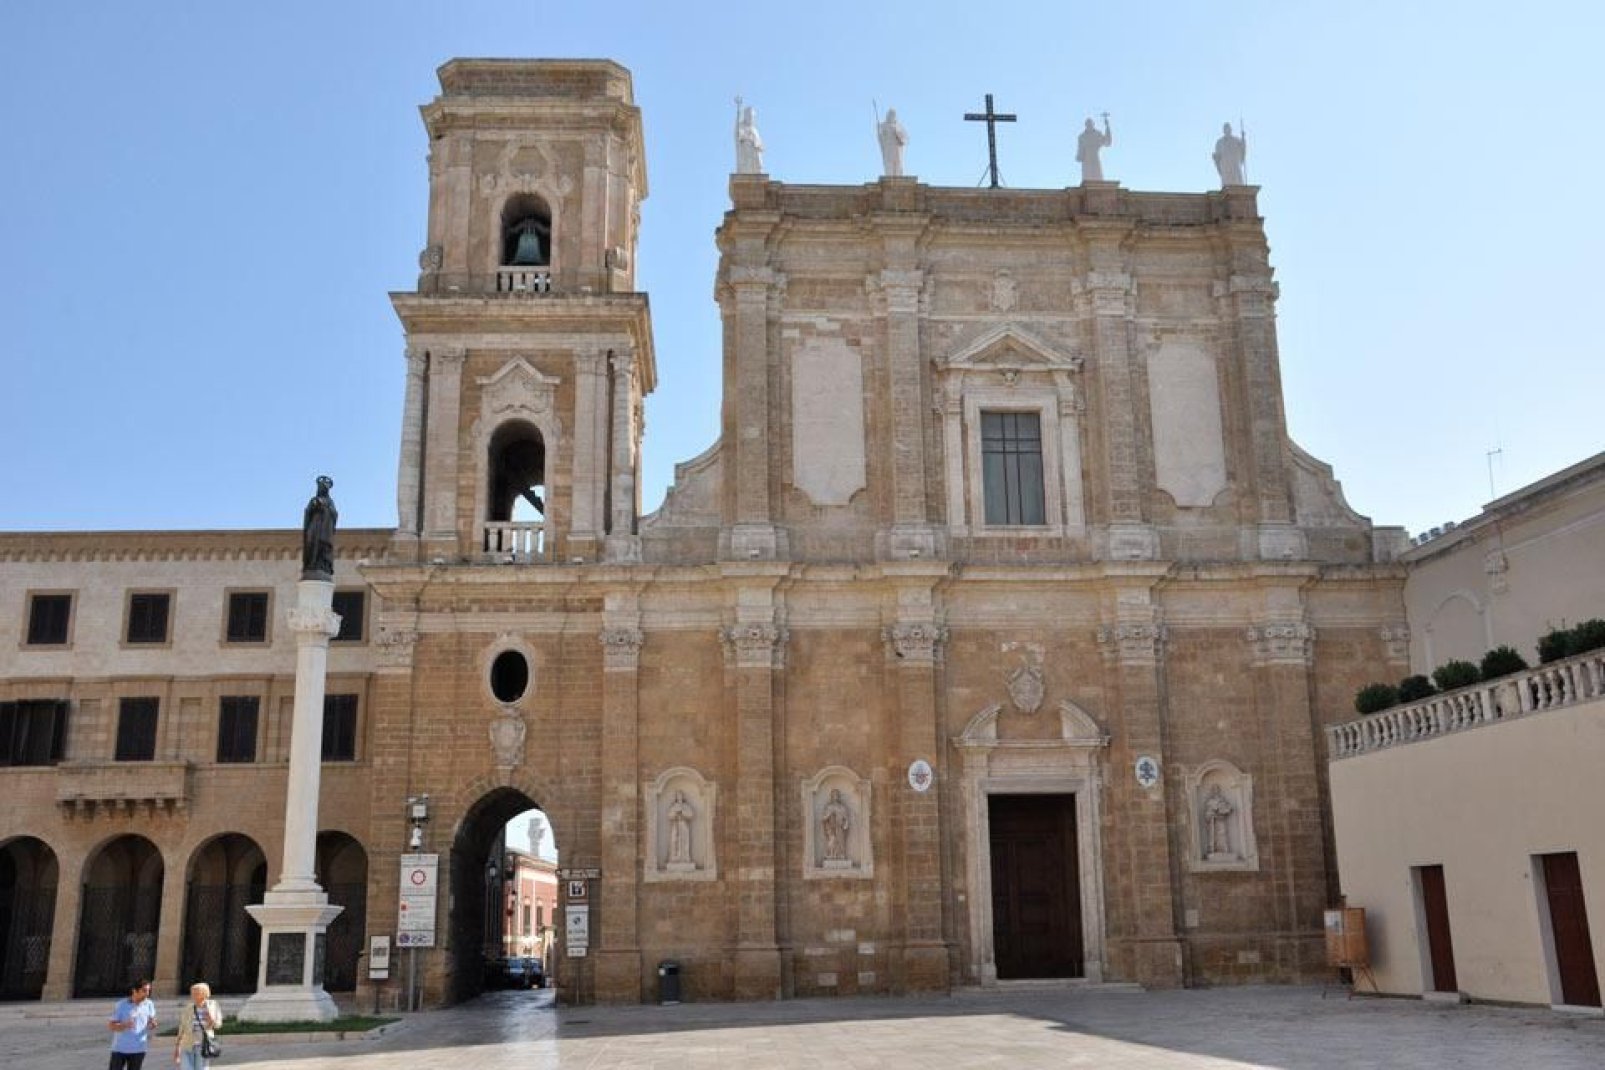 La cattedrale di Brindisi fu costruita tra l'XI e XII secolo.